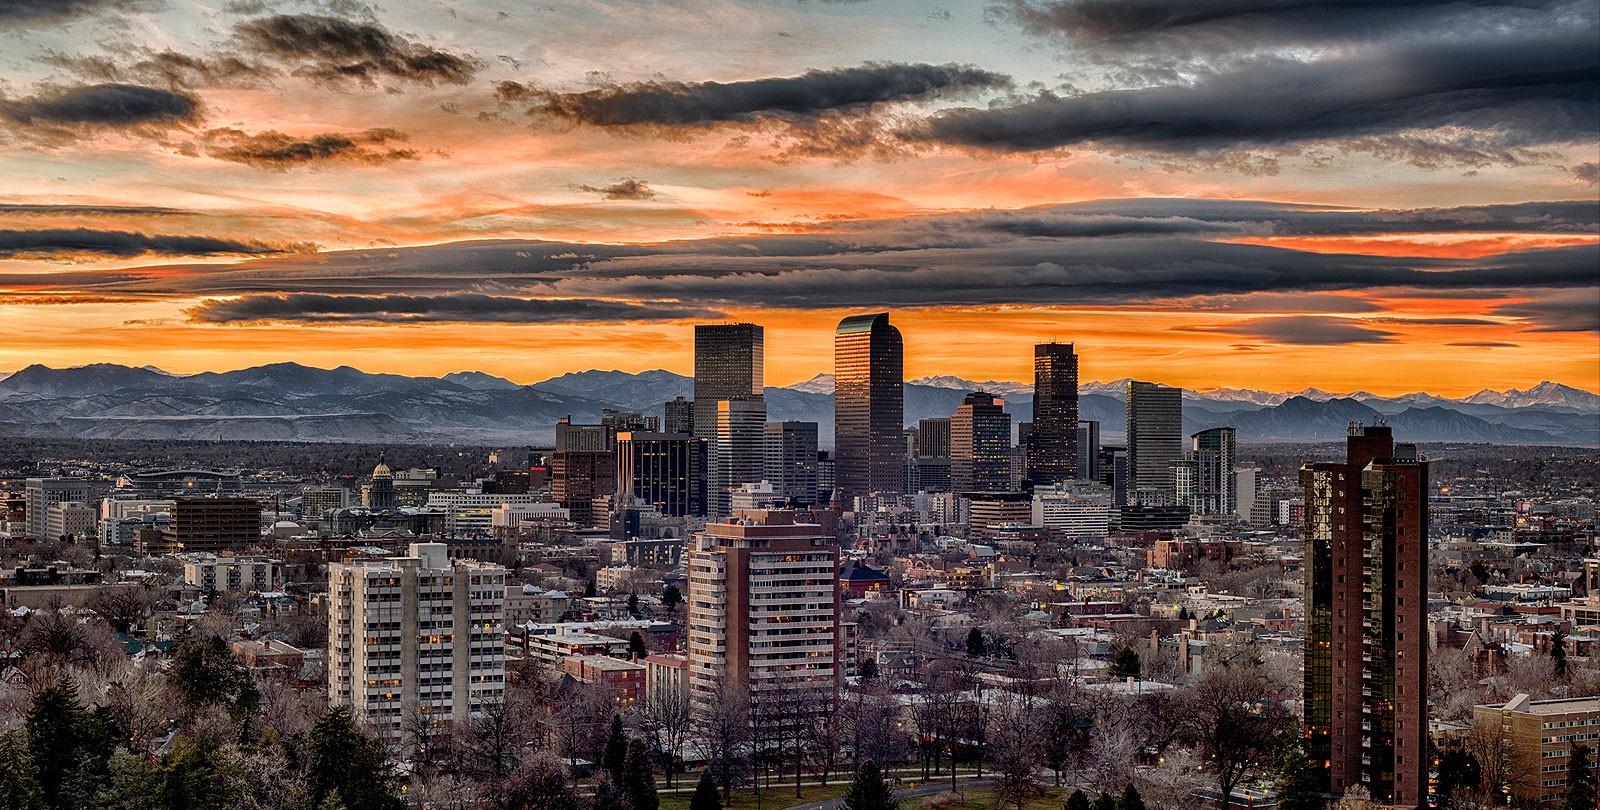 City View - Real Estate Industry in Denver, Colorado